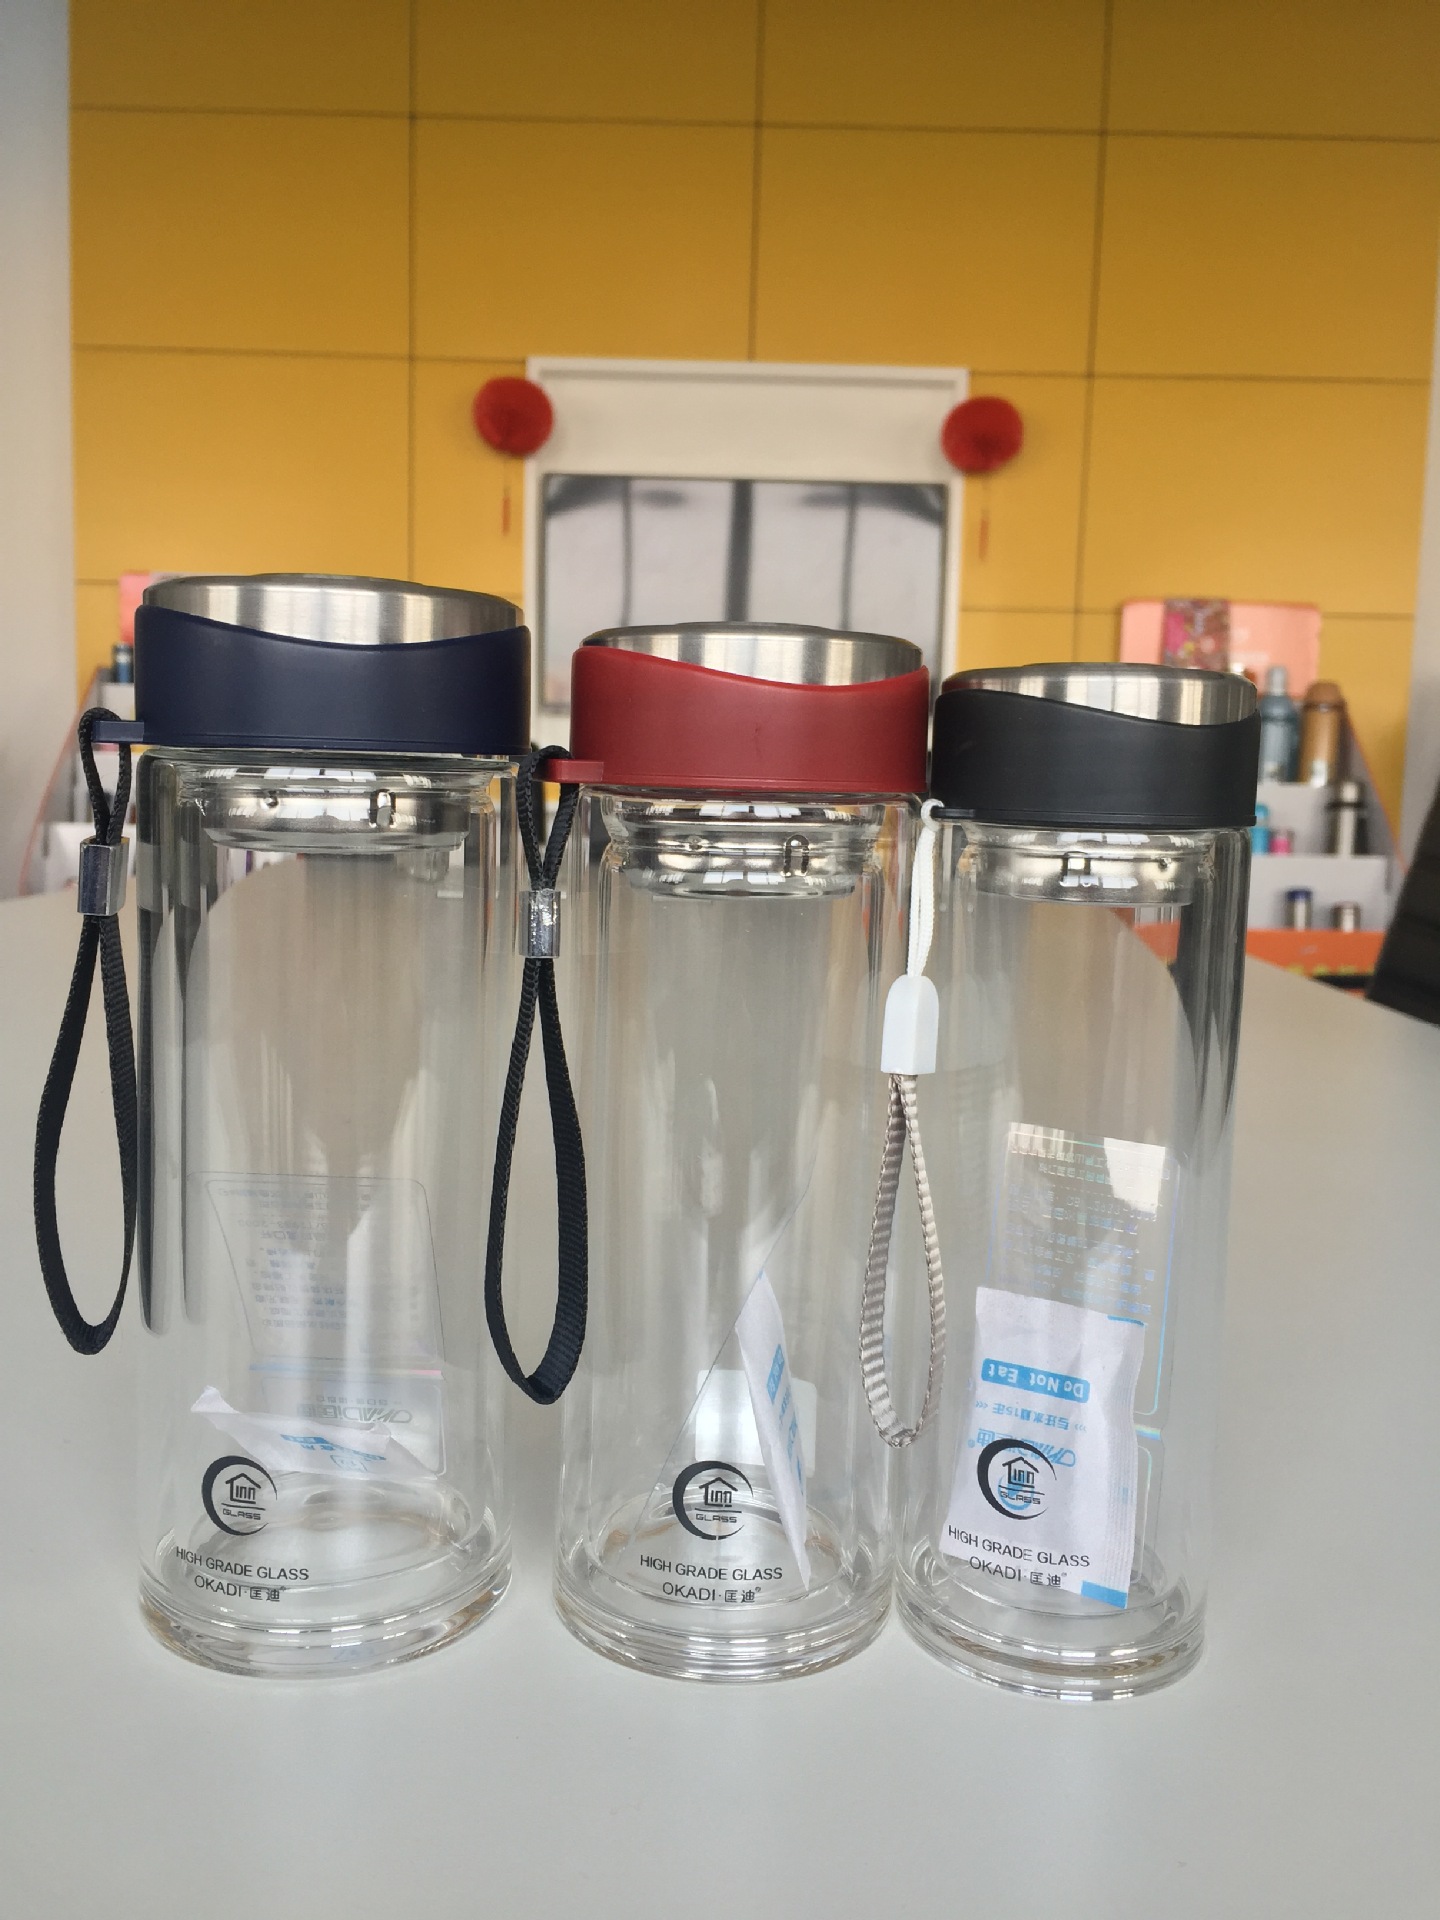 匡迪055系列玻璃杯 吊带便携水杯 带茶隔运动瓶创意活动纪念水杯示例图1